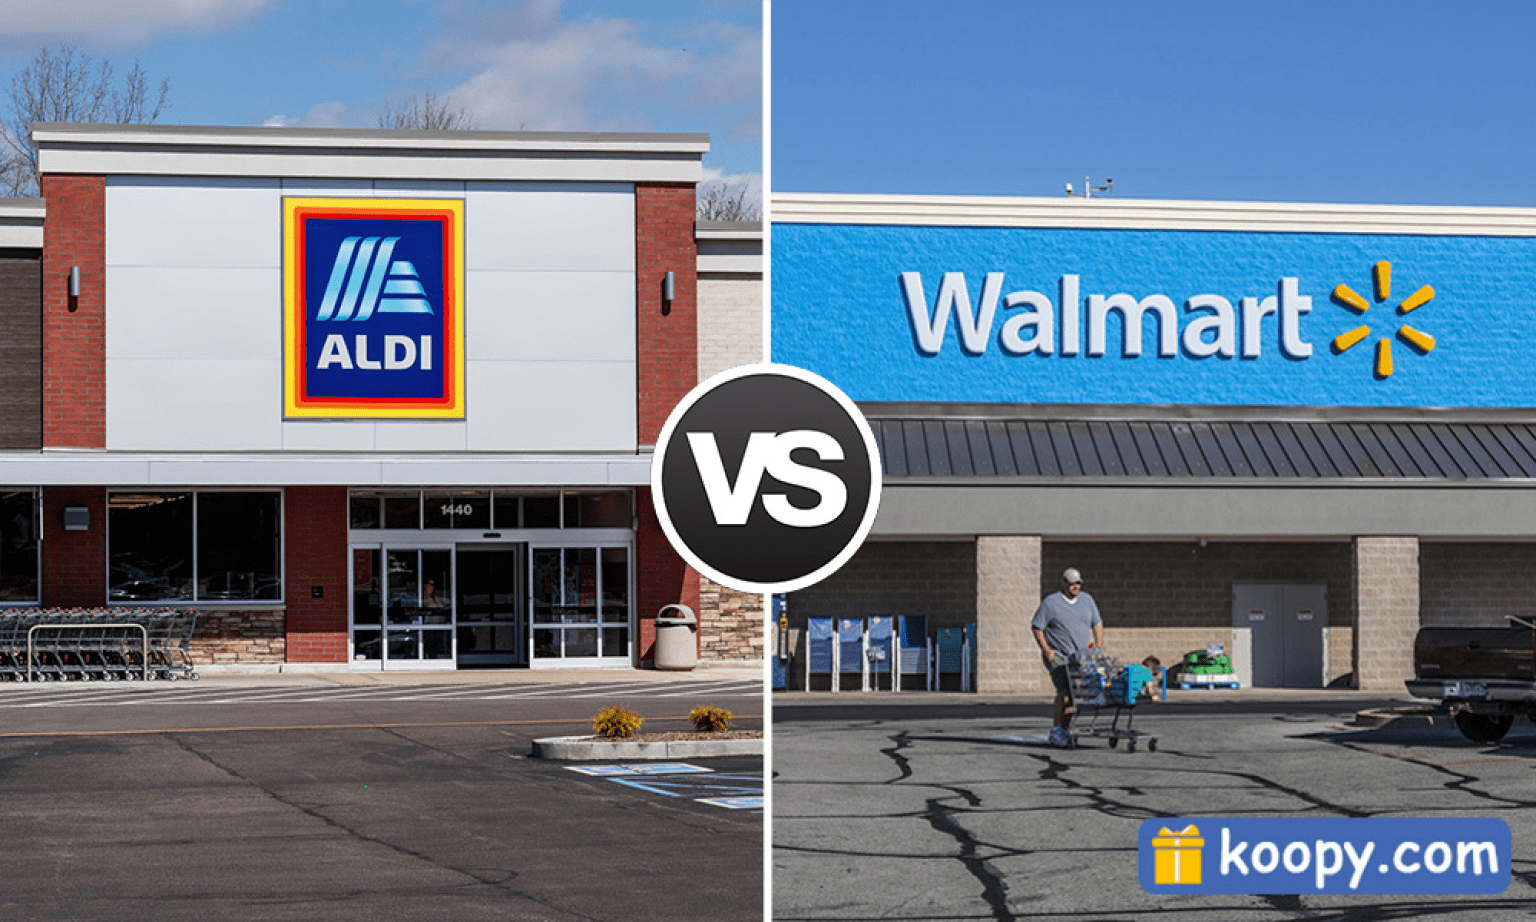 Aldi vs. Walmart Price Comparison Which Store is Cheaper?